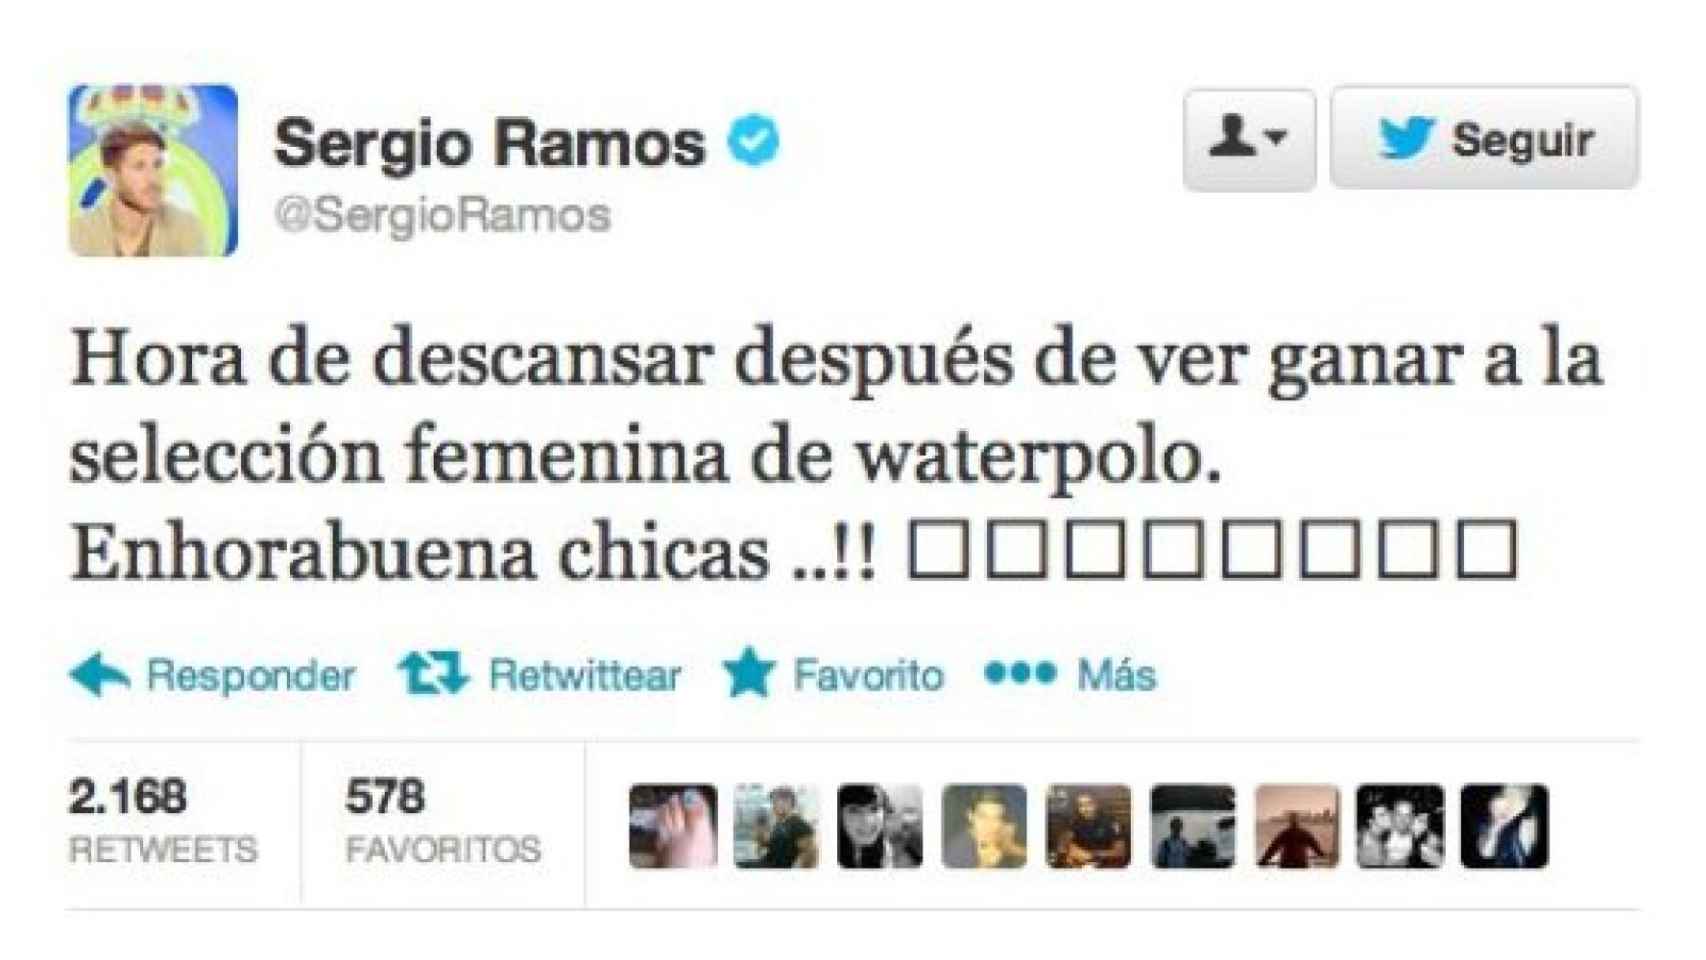 Ramos y su felicitación tardía a las chicas del waterpolo.